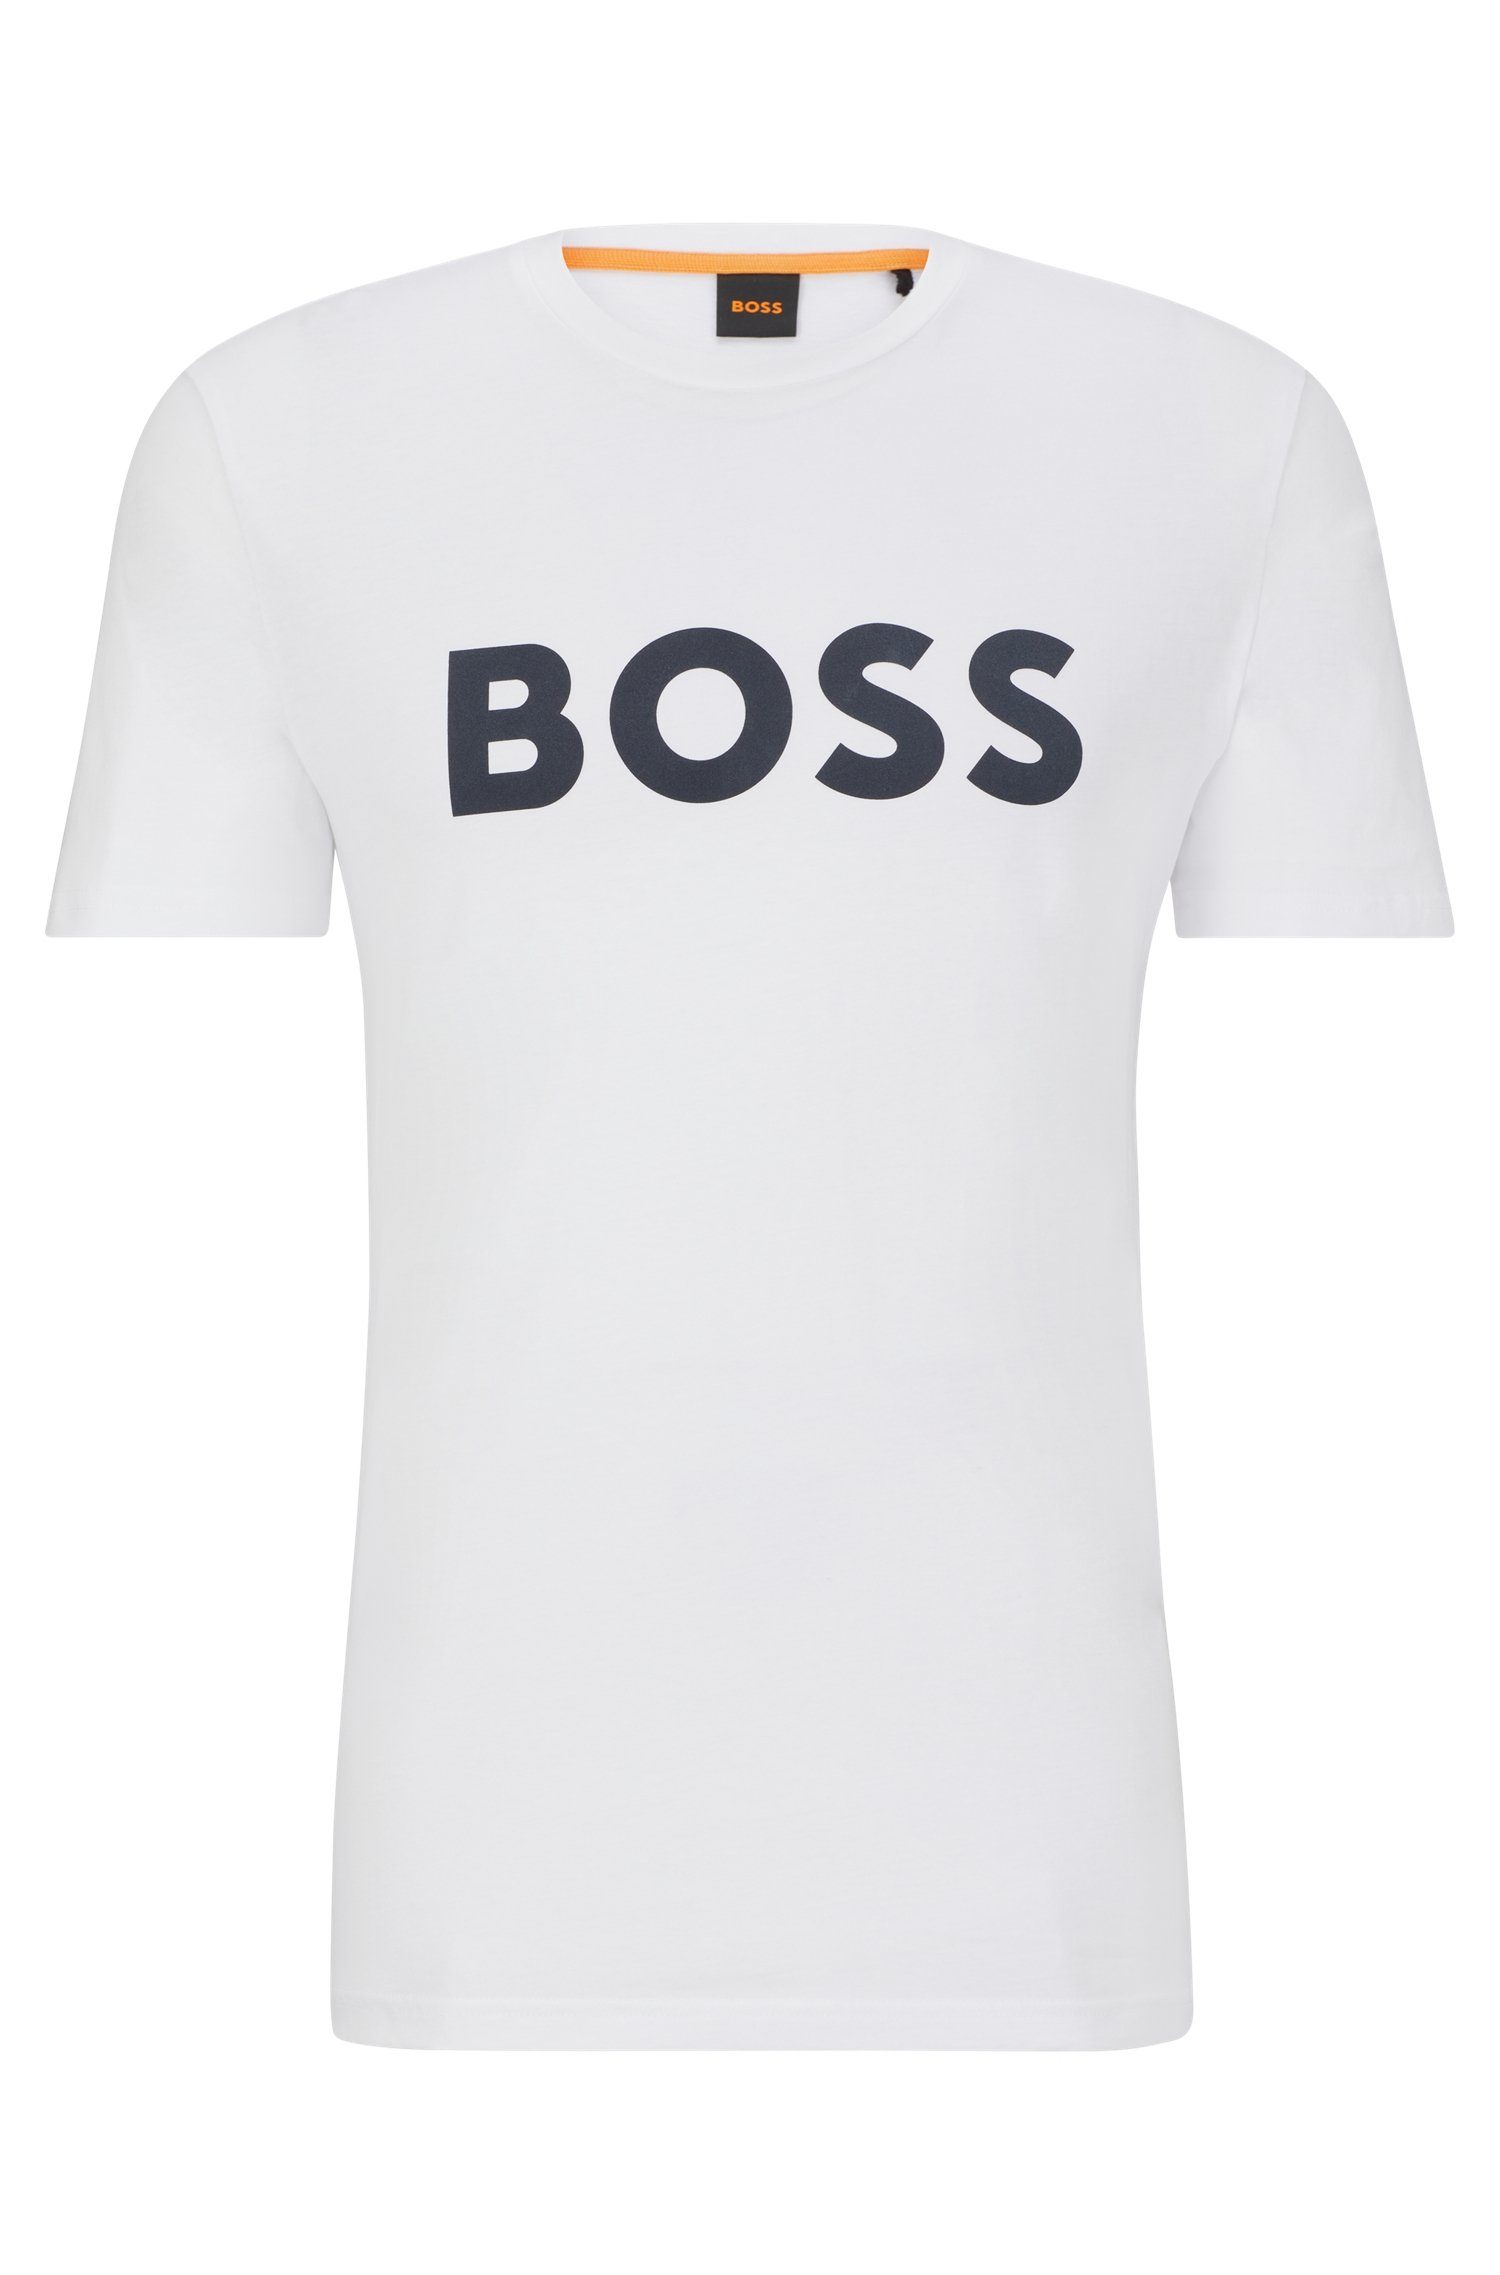 BOSS ORANGE T-Shirt Thinking 10246016 auf BOSS der White100 mit Druck großem 01 Brust 1